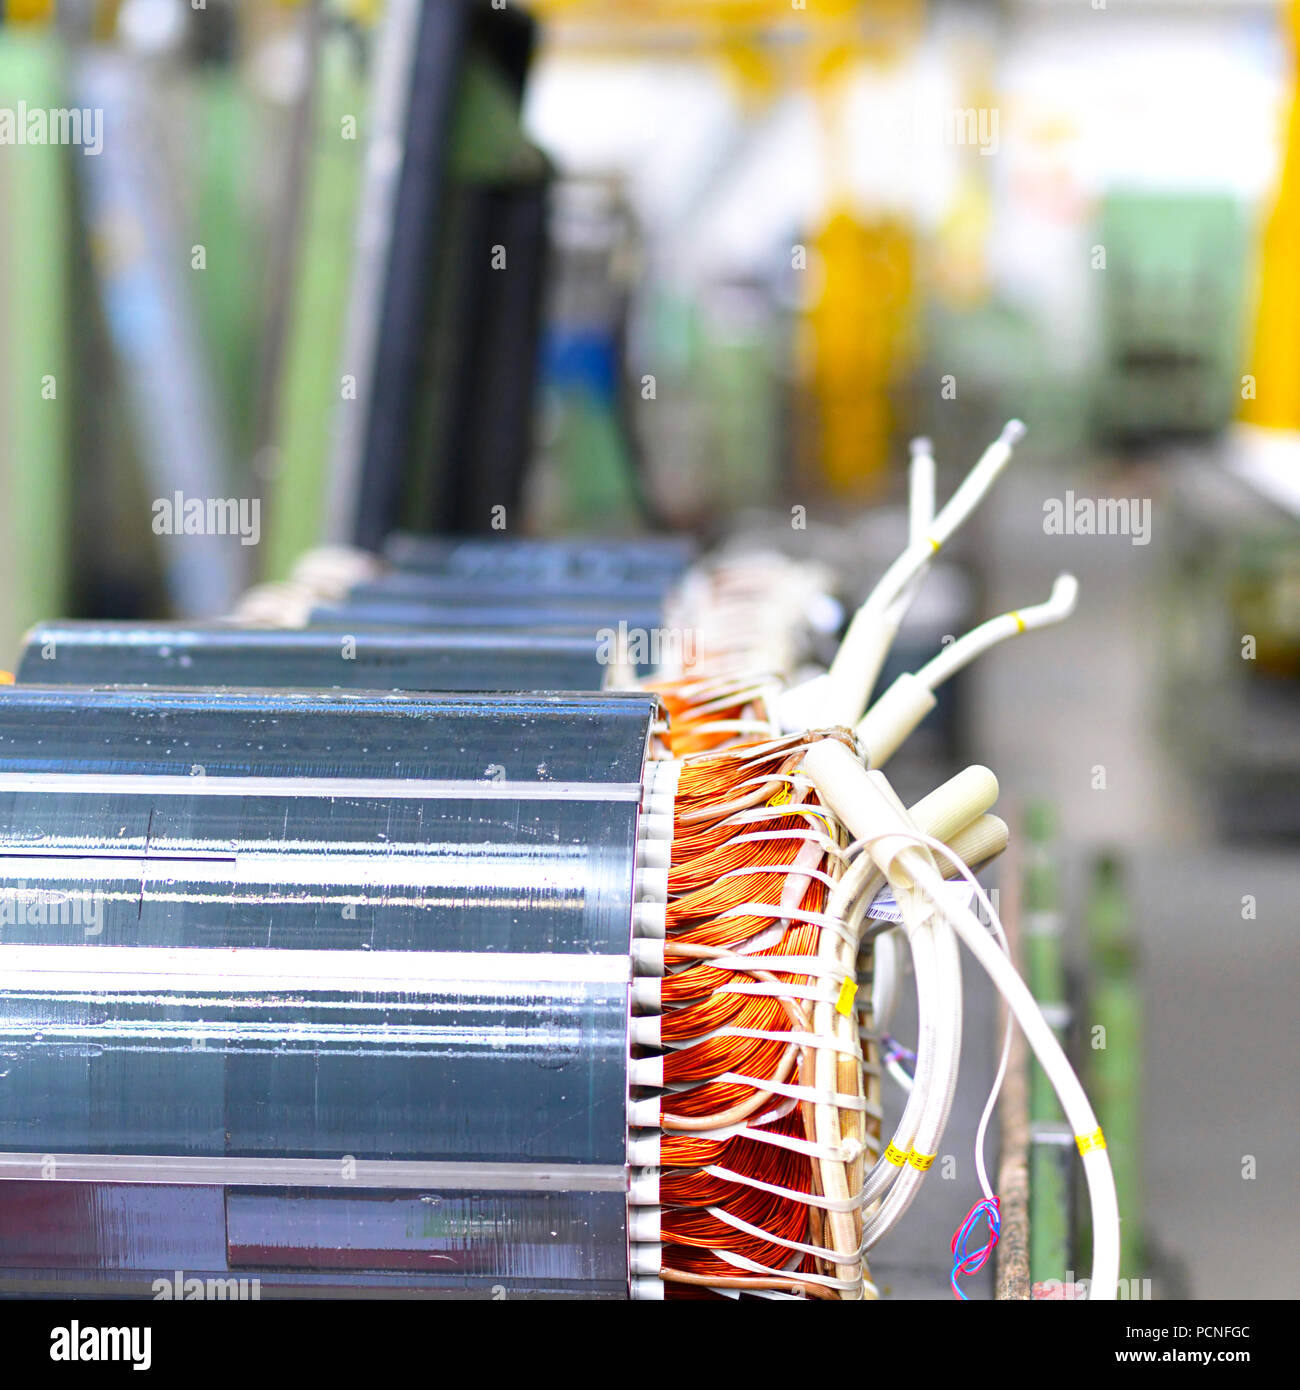 Ingegneria meccanica: closeup di motori elettrici nella produzione in un moderno stabilimento Foto Stock